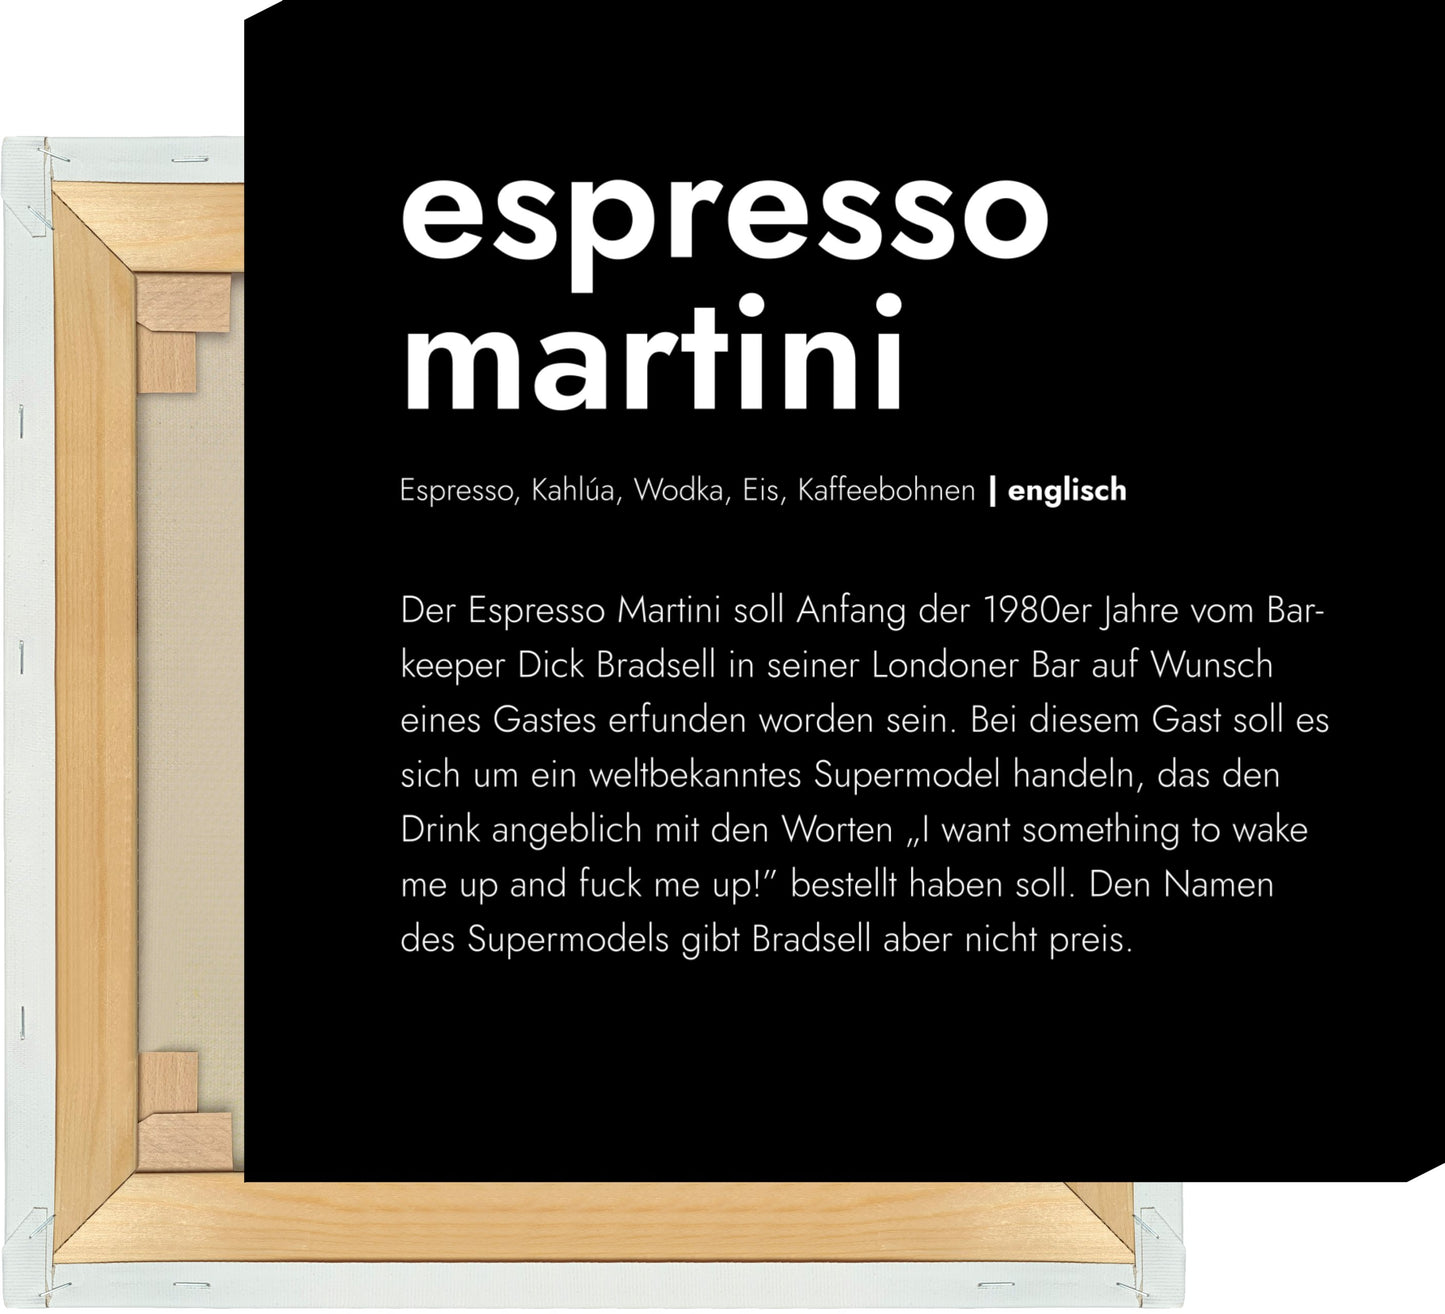 Leinwand Espresso Martini - Definition